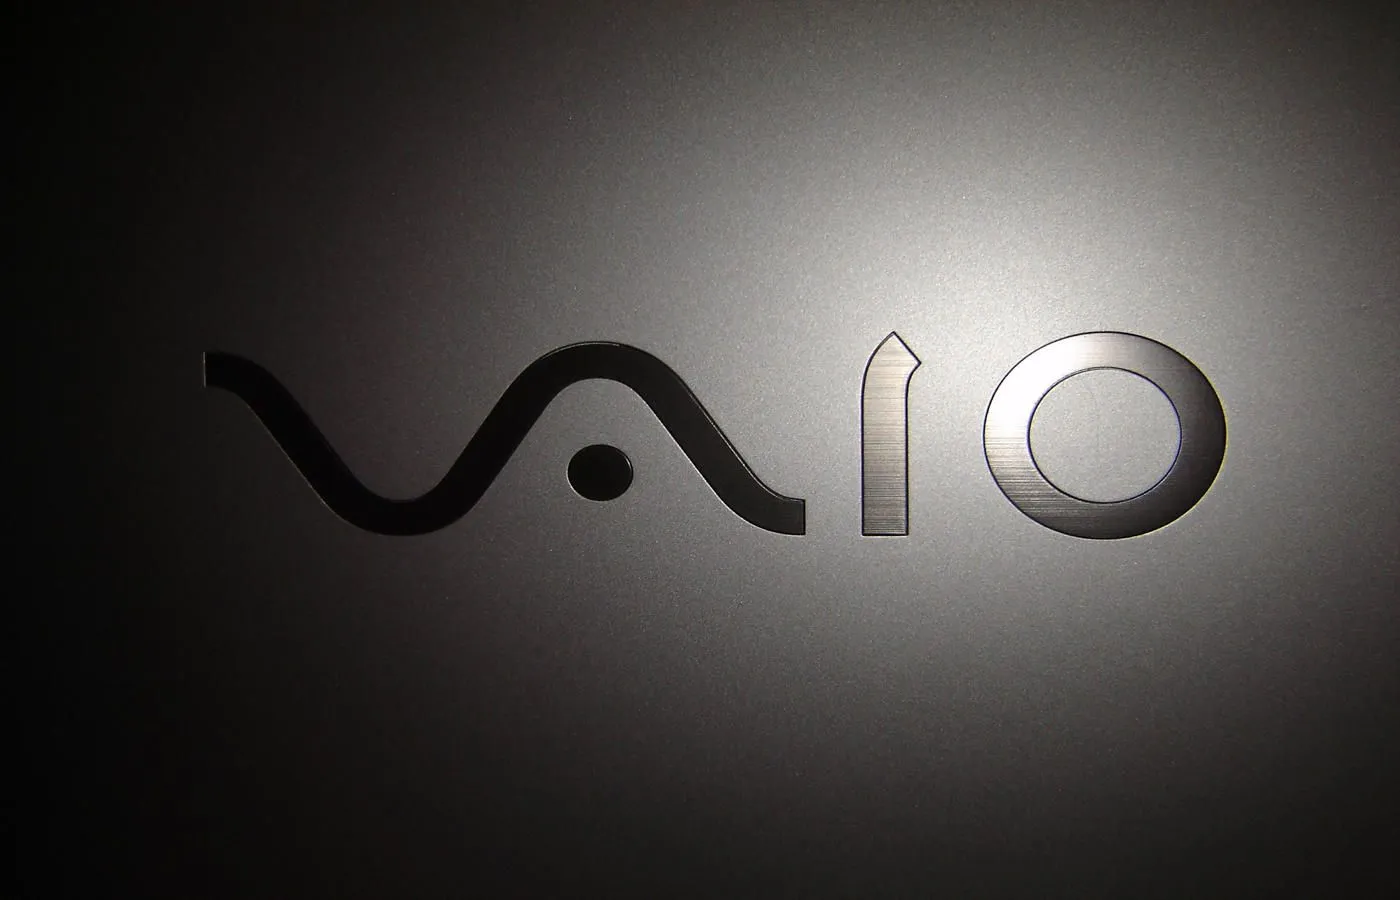 VAIO logo by dhaneshART on DeviantArt